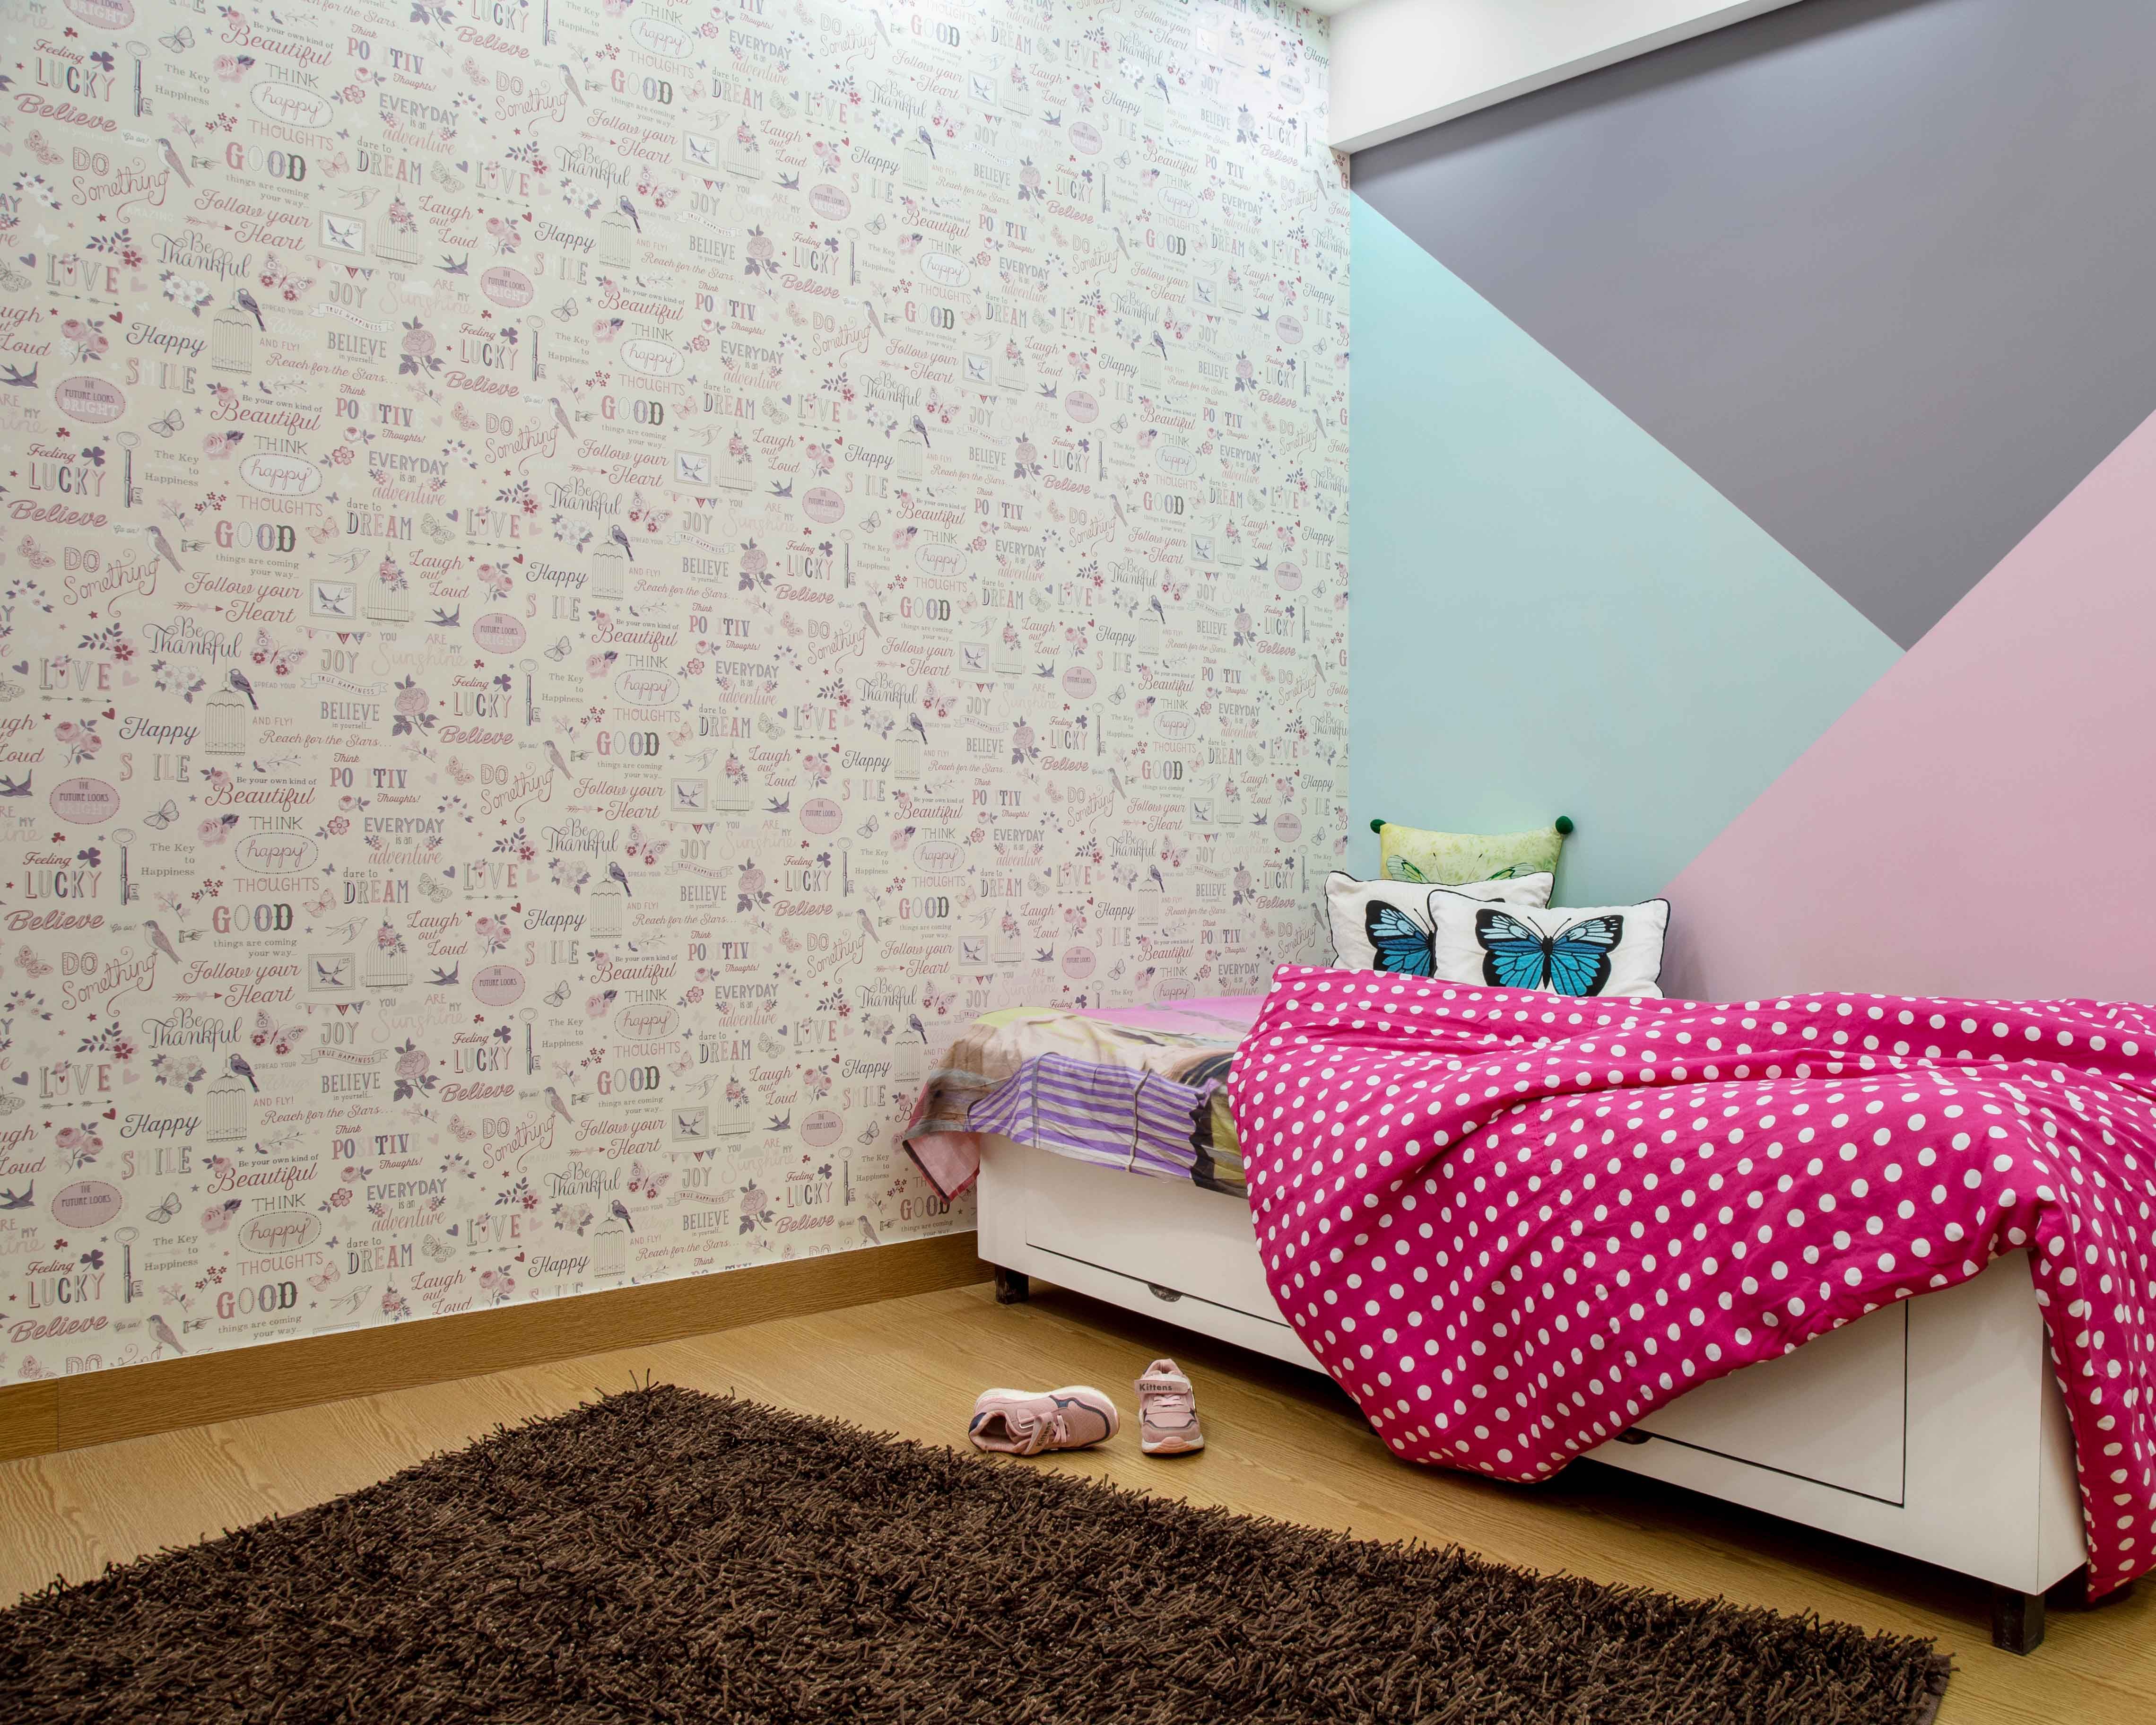 240 Wallpaper ideas | wallpaper, wall coverings, schumacher wallpaper